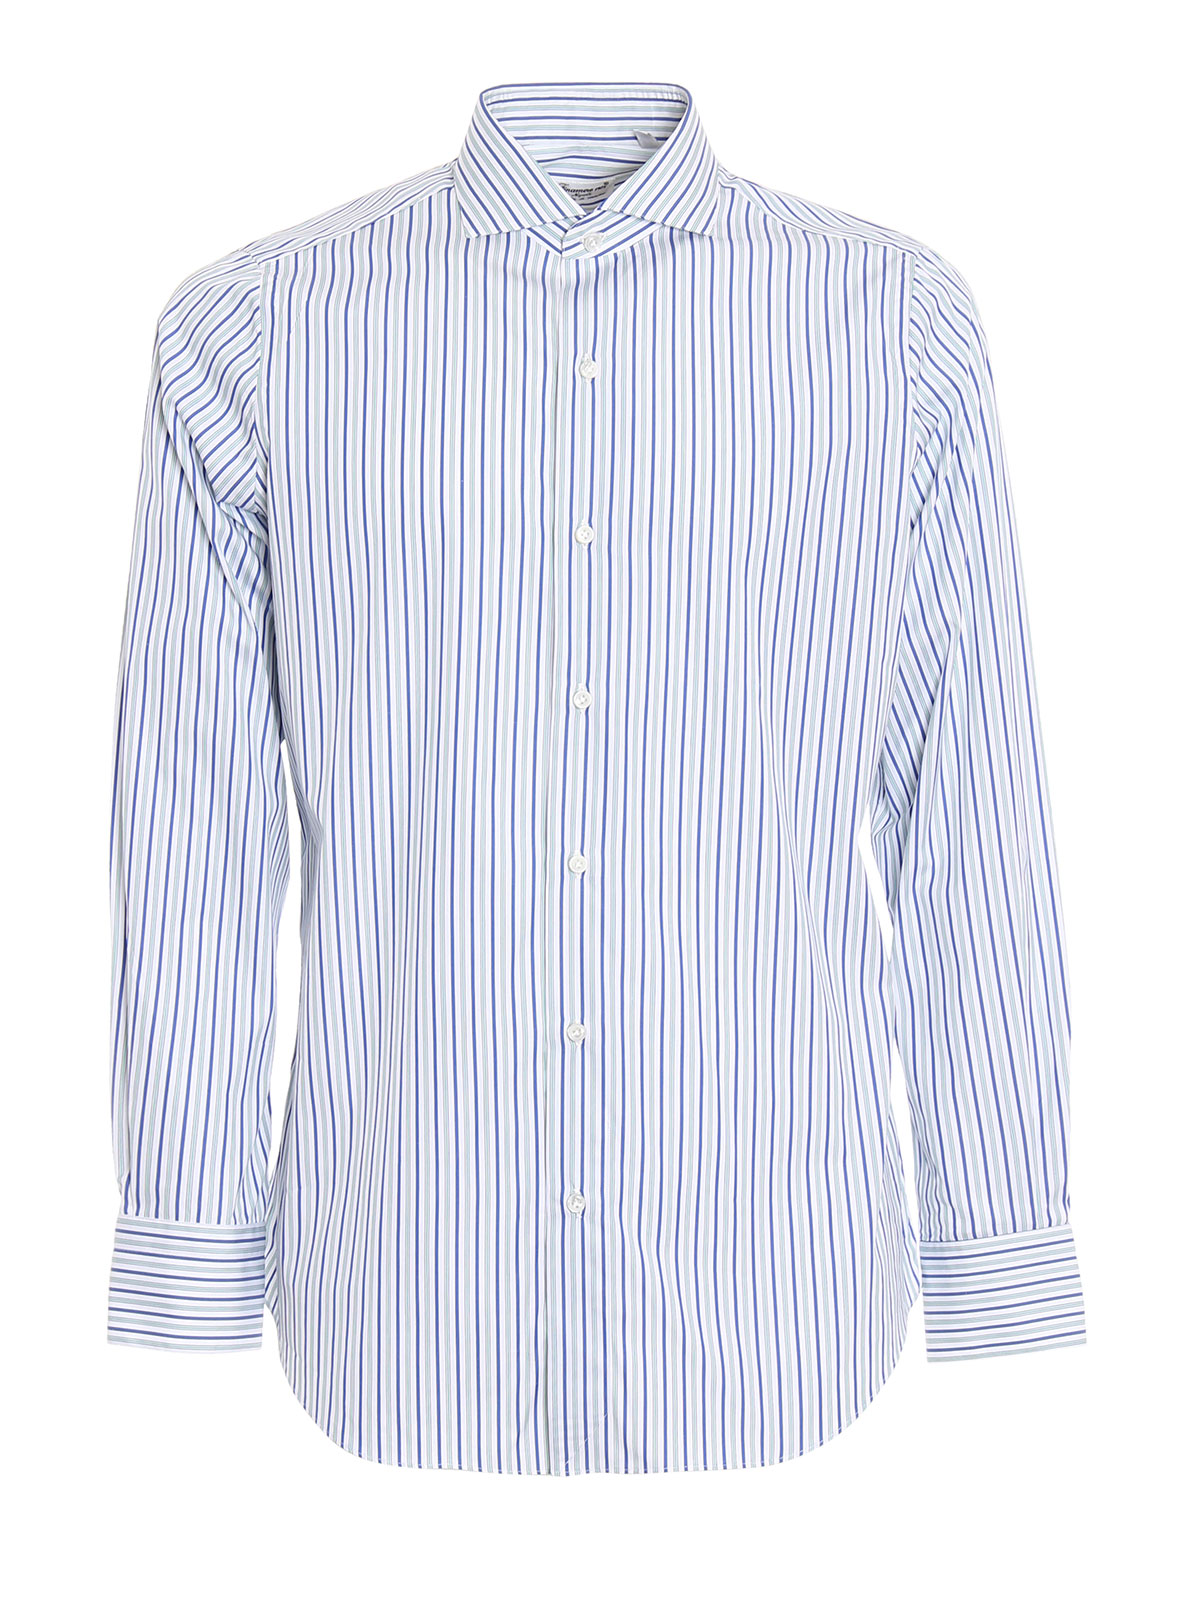 Shirts Finamore 1925 - Striped Milano shirt - MILANO01219301 | iKRIX.com